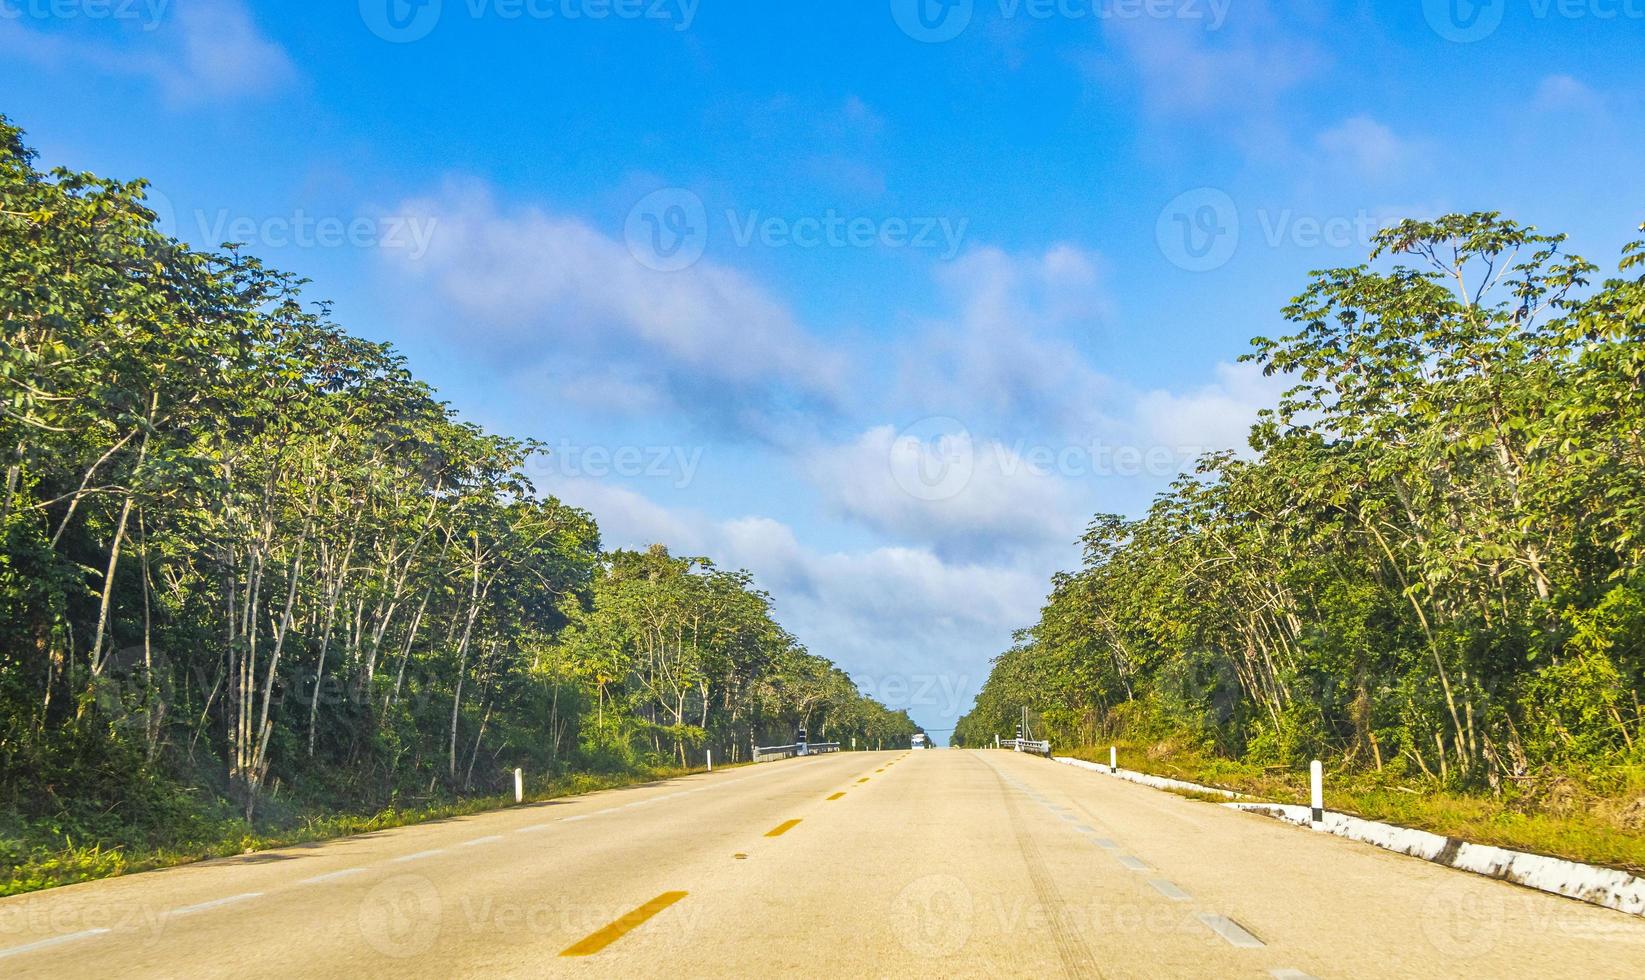 rijden op snelweg snelweg snelweg in jungle tropische natuur mexico. foto